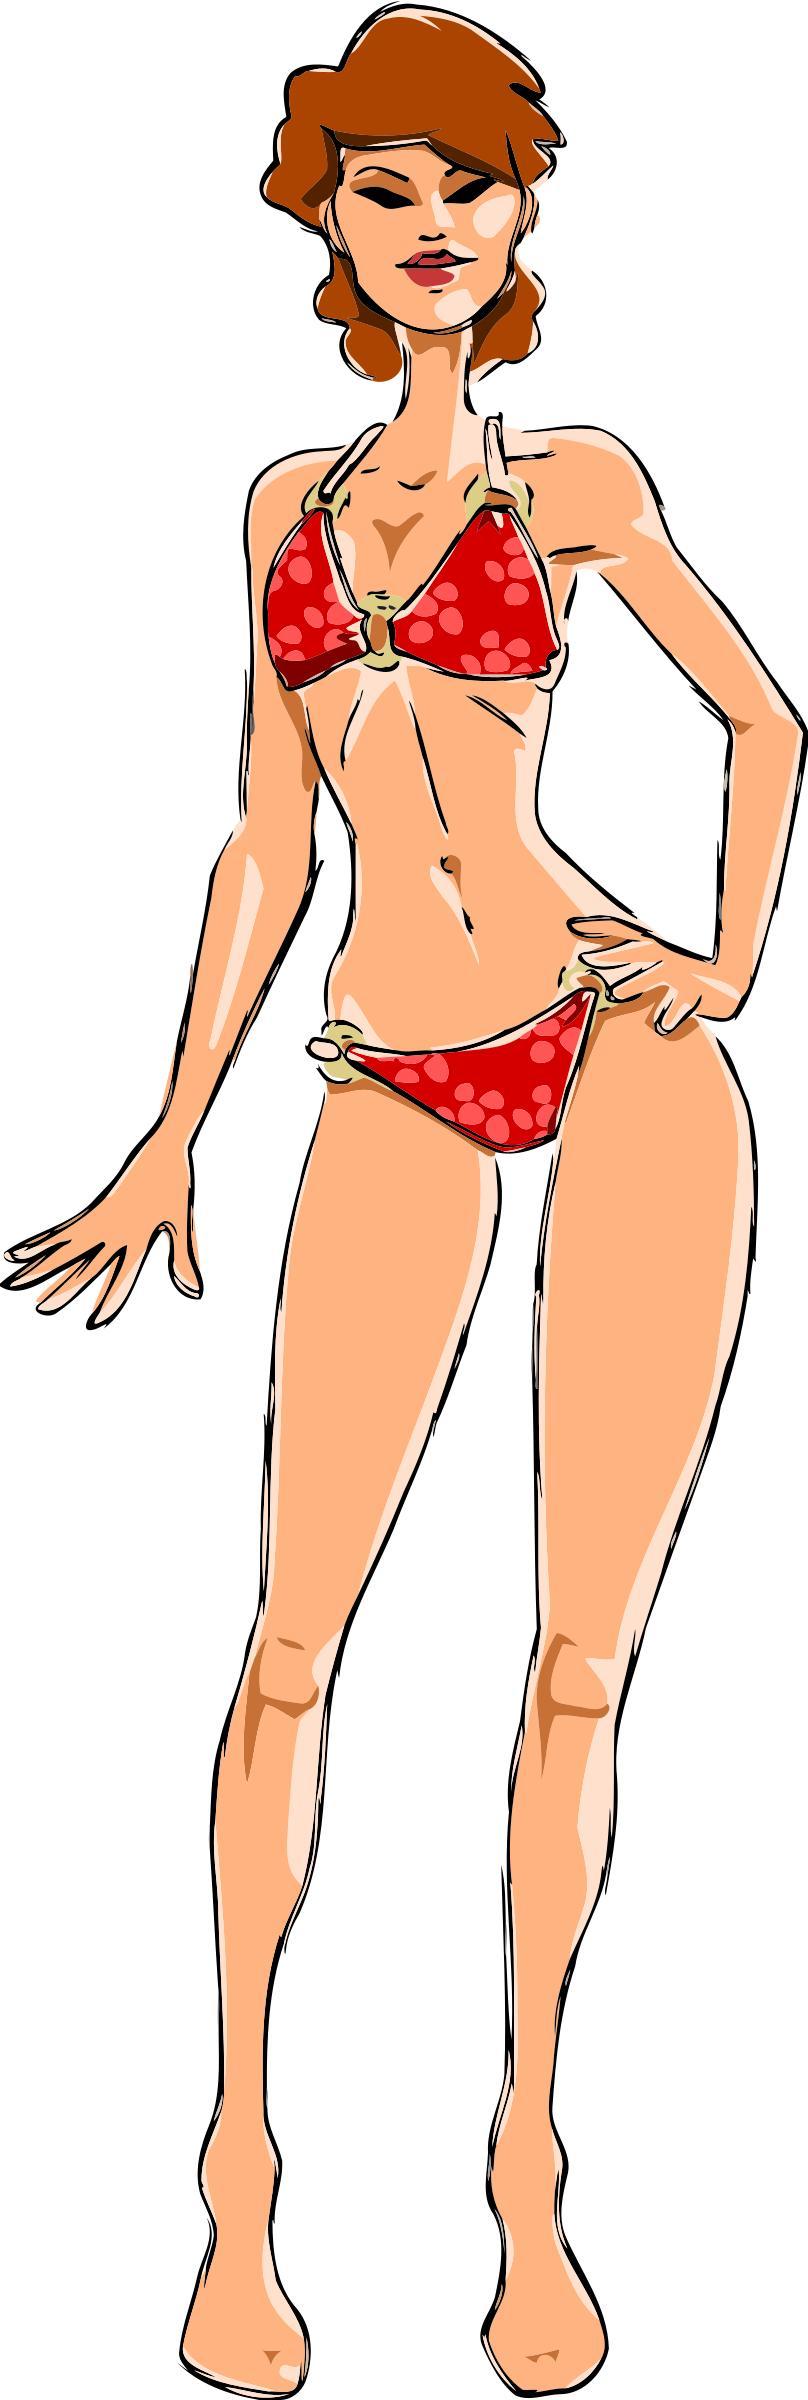 Woman in bikini 2 png transparent